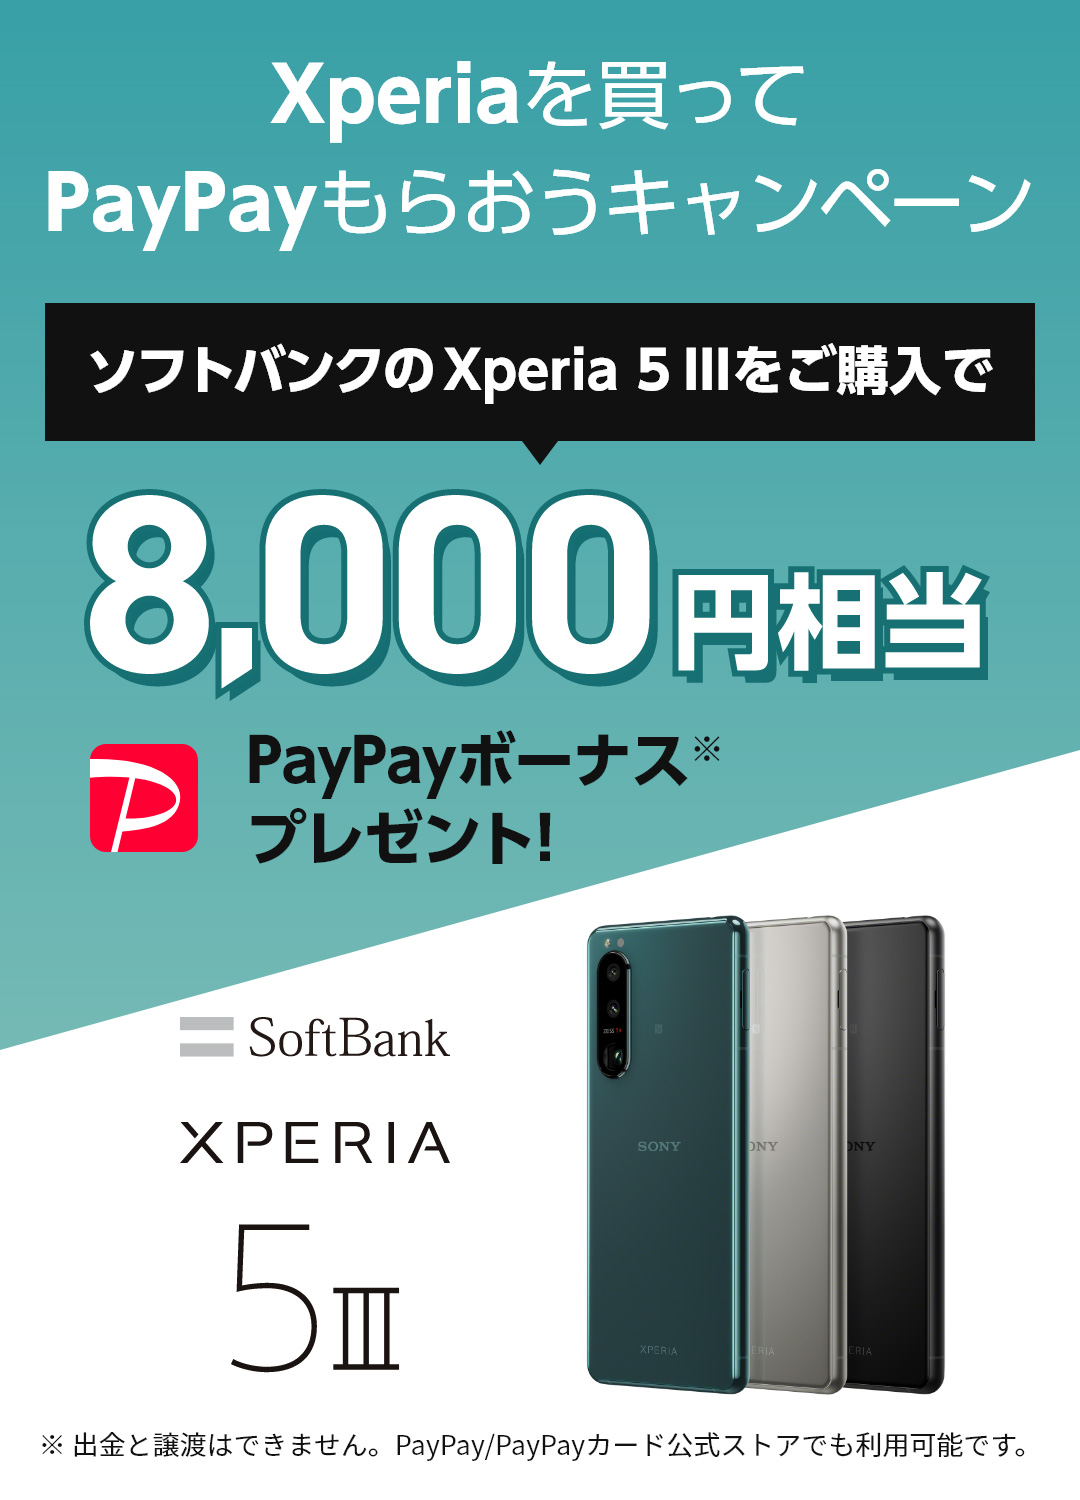 ソフトバンクでXperiaを買ってPayPayもらおうキャンペーン ソフトバンクのXperia 5 IIIをご購入で8,000円相当PayPayボーナス※プレゼント！※出金と譲渡はできません。PayPay/PayPayカード公式ストアでも利用可能です。